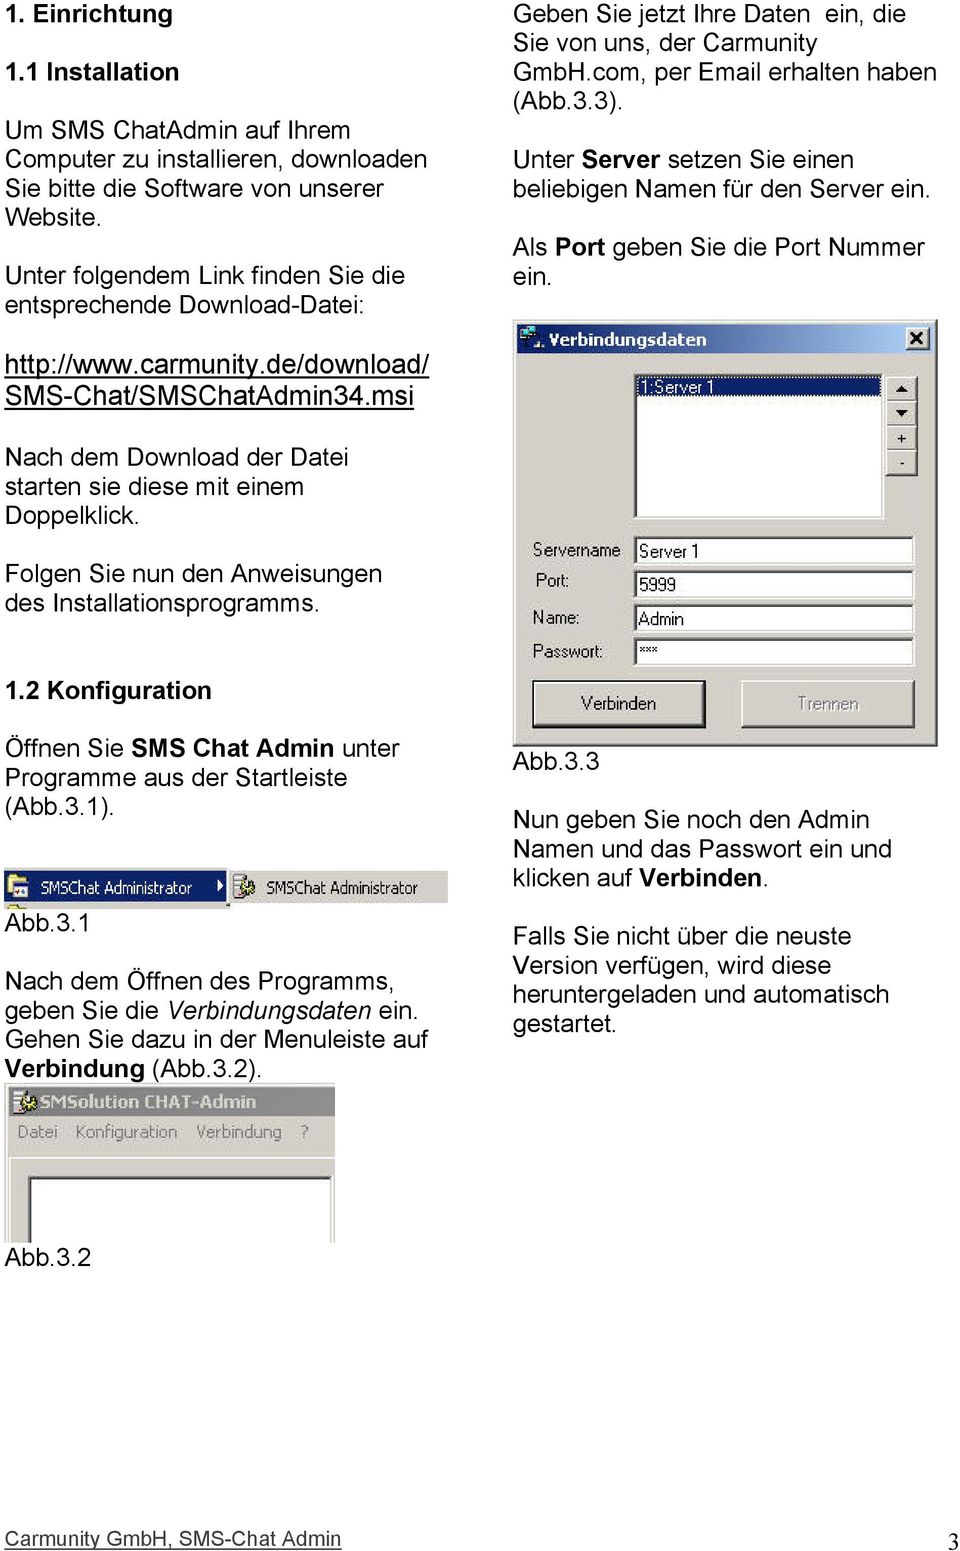 Unter Server setzen Sie einen beliebigen Namen für den Server ein. Als Port geben Sie die Port Nummer ein. http://www.carmunity.de/download/ SMS-Chat/SMSChatAdmin34.